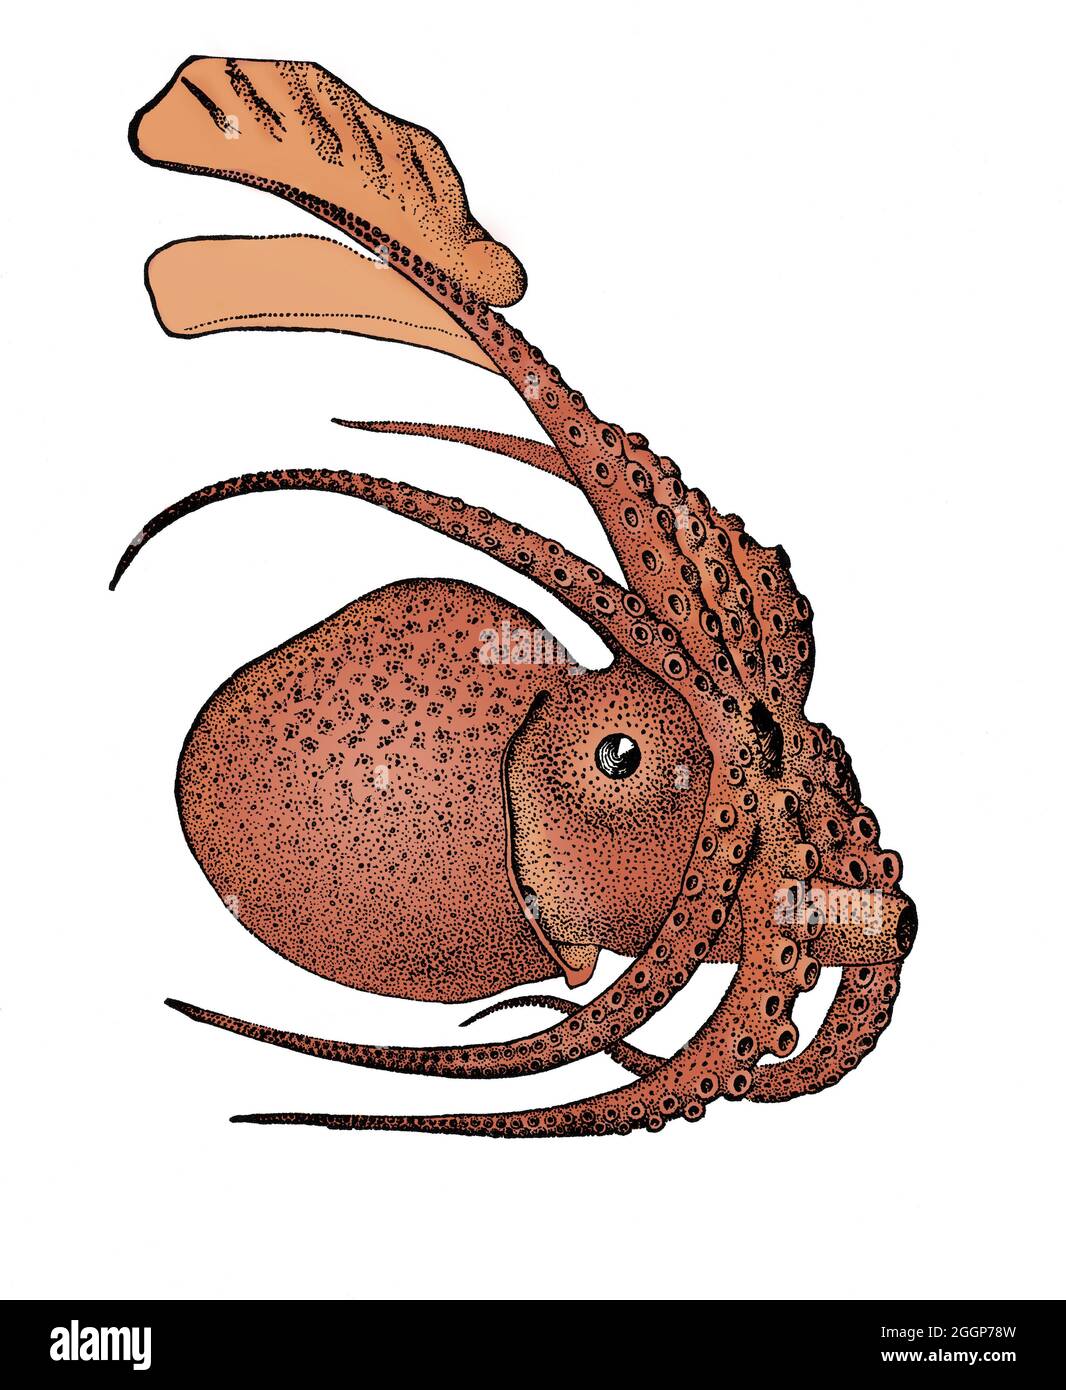 Argonauta argo, également connu sous le nom de Grand argonaut, est une espèce d'octopus pélagique appartenant au genre Argonauta.Argonauta argo est cosmopolite et se trouve dans les eaux tropicales et subtropicales du monde entier.Couleurs améliorées. Banque D'Images